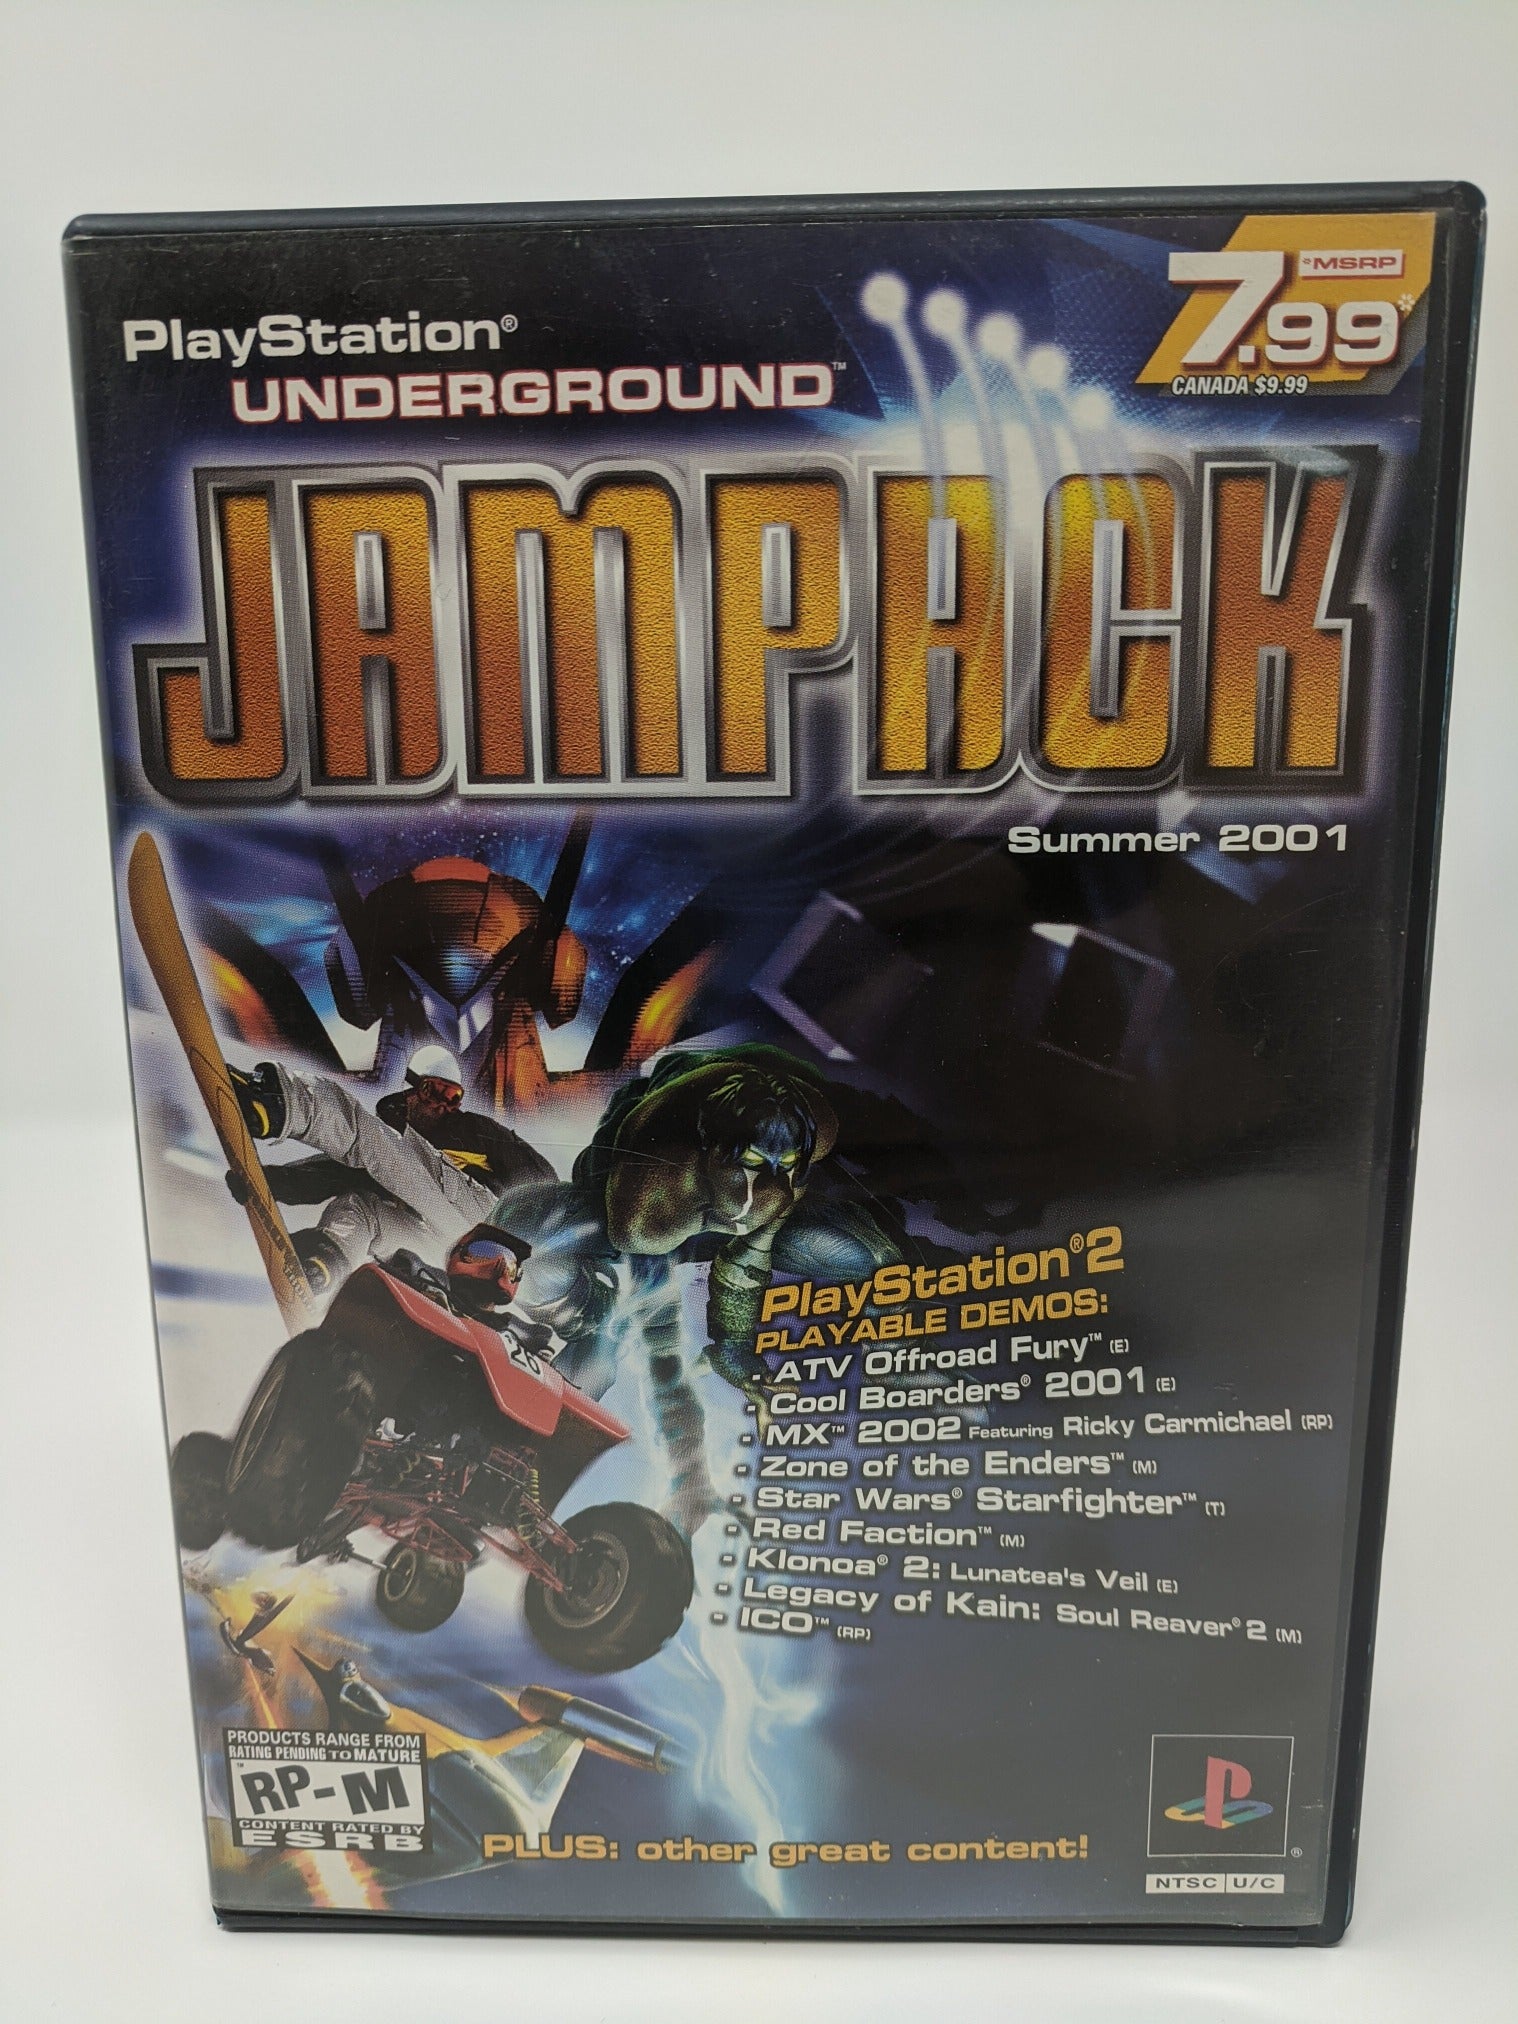 jampack summer 2001